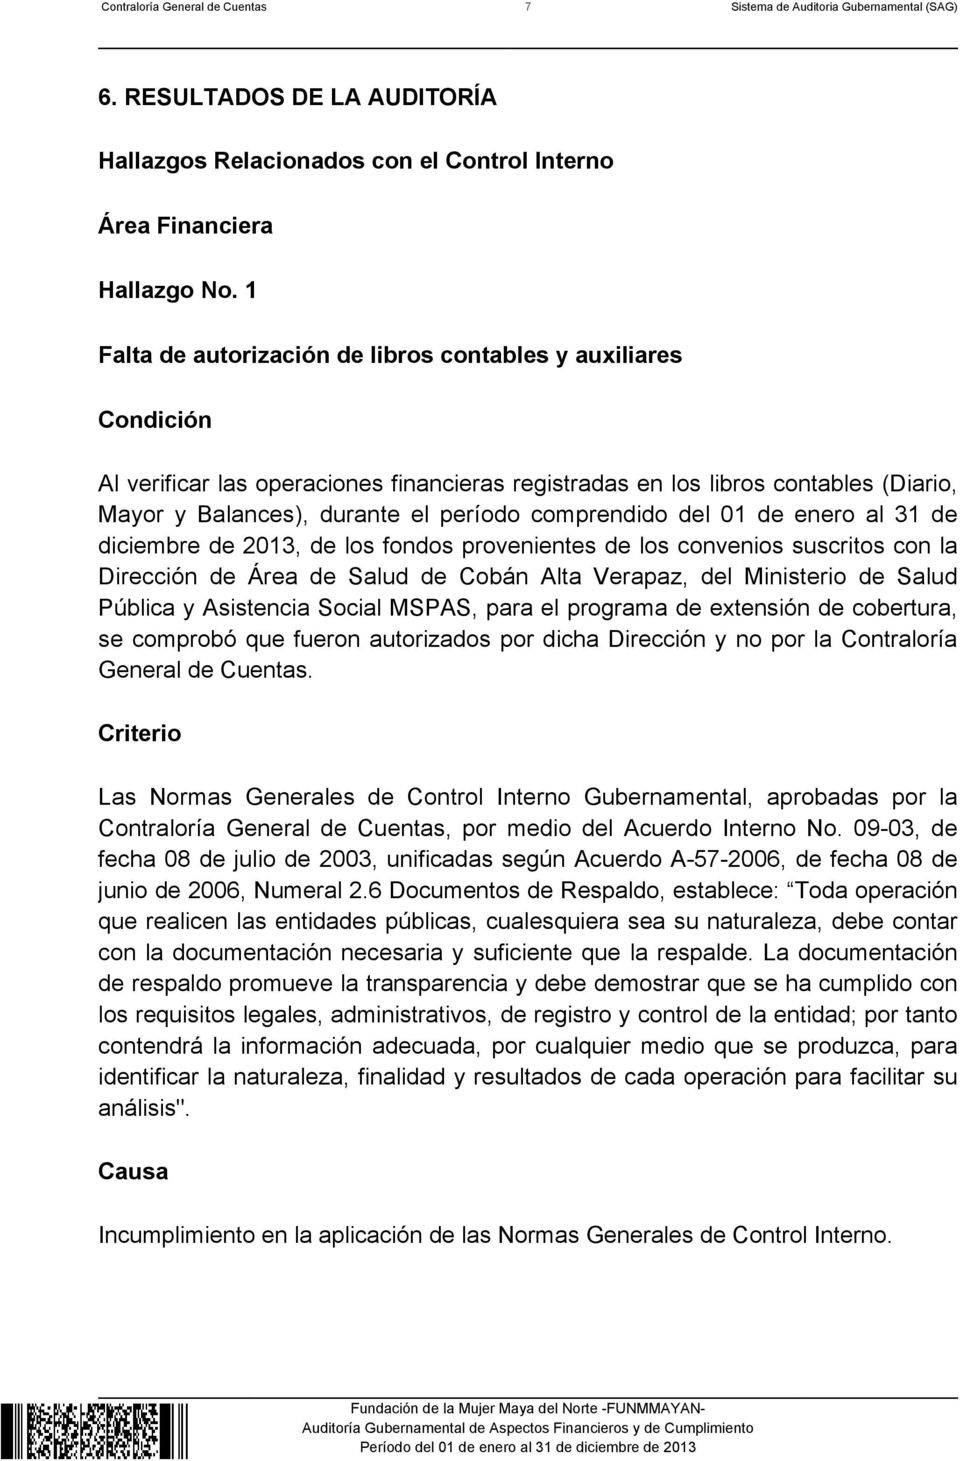 comprendido del 01 de enero al 31 de diciembre de 2013, de los fondos provenientes de los convenios suscritos con la Dirección de Área de Salud de Cobán Alta Verapaz, del Ministerio de Salud Pública